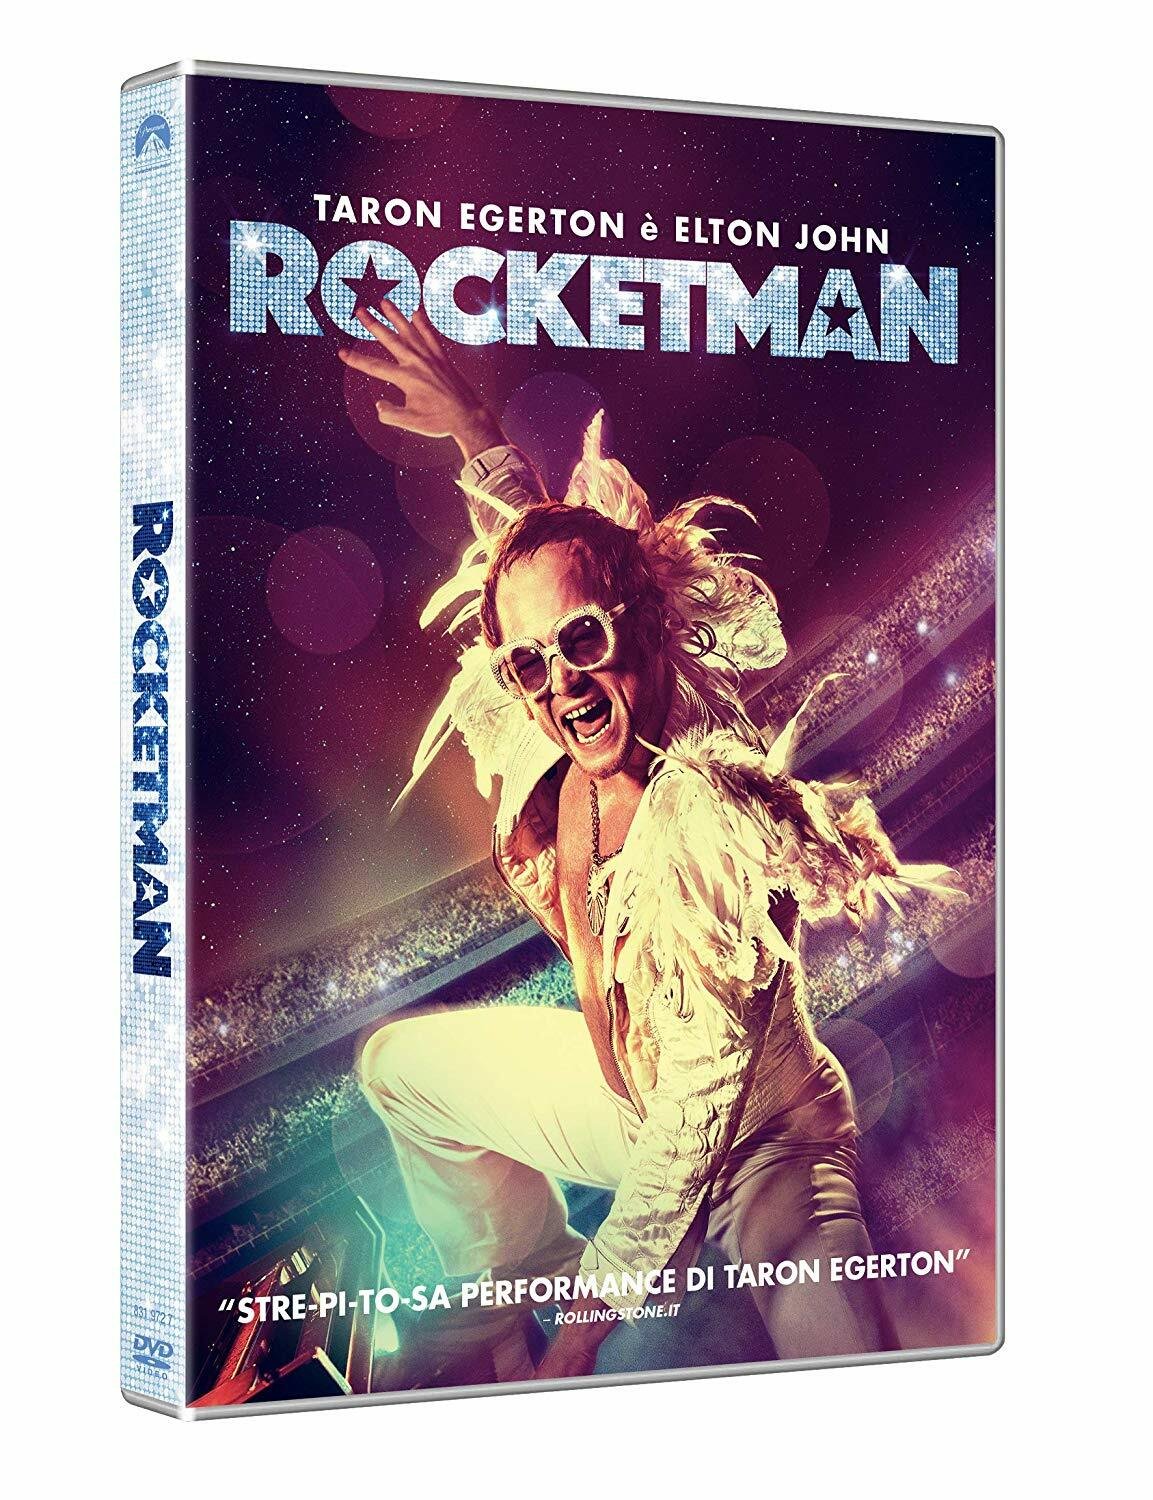 Copertina del DVD di Rocketman